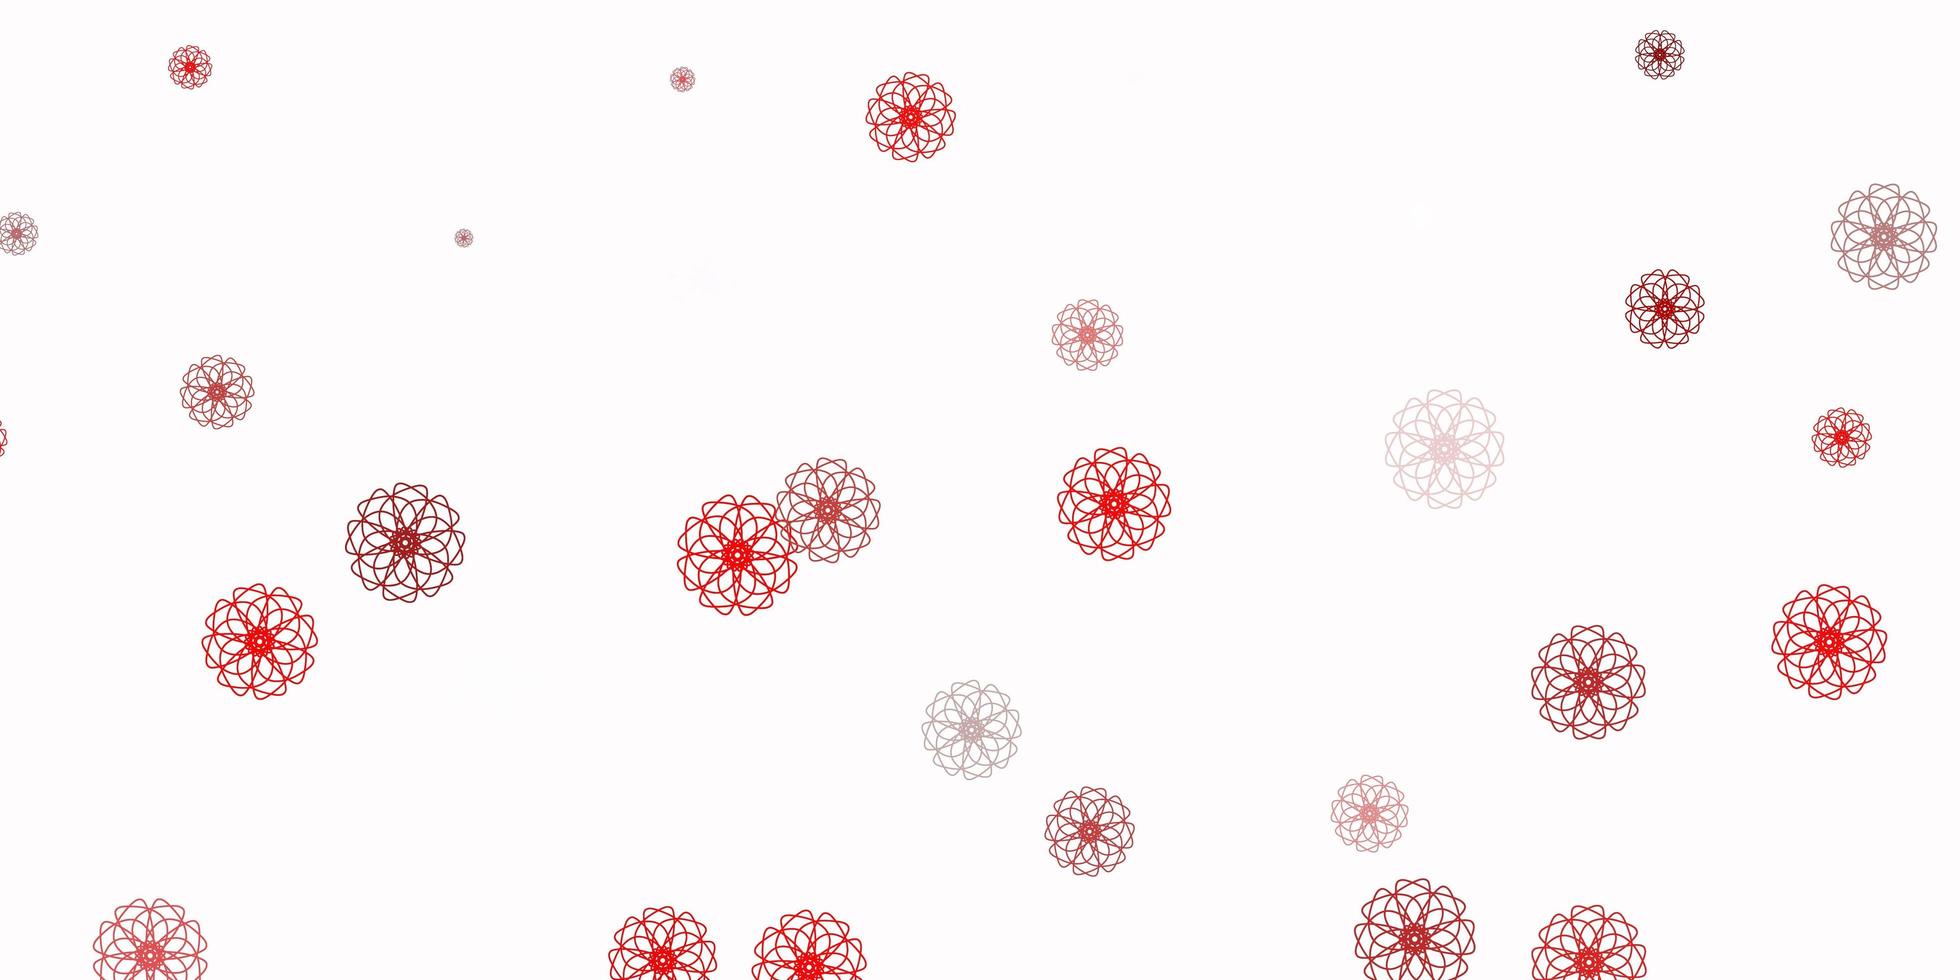 plantilla de doodle de vector rojo claro con flores.